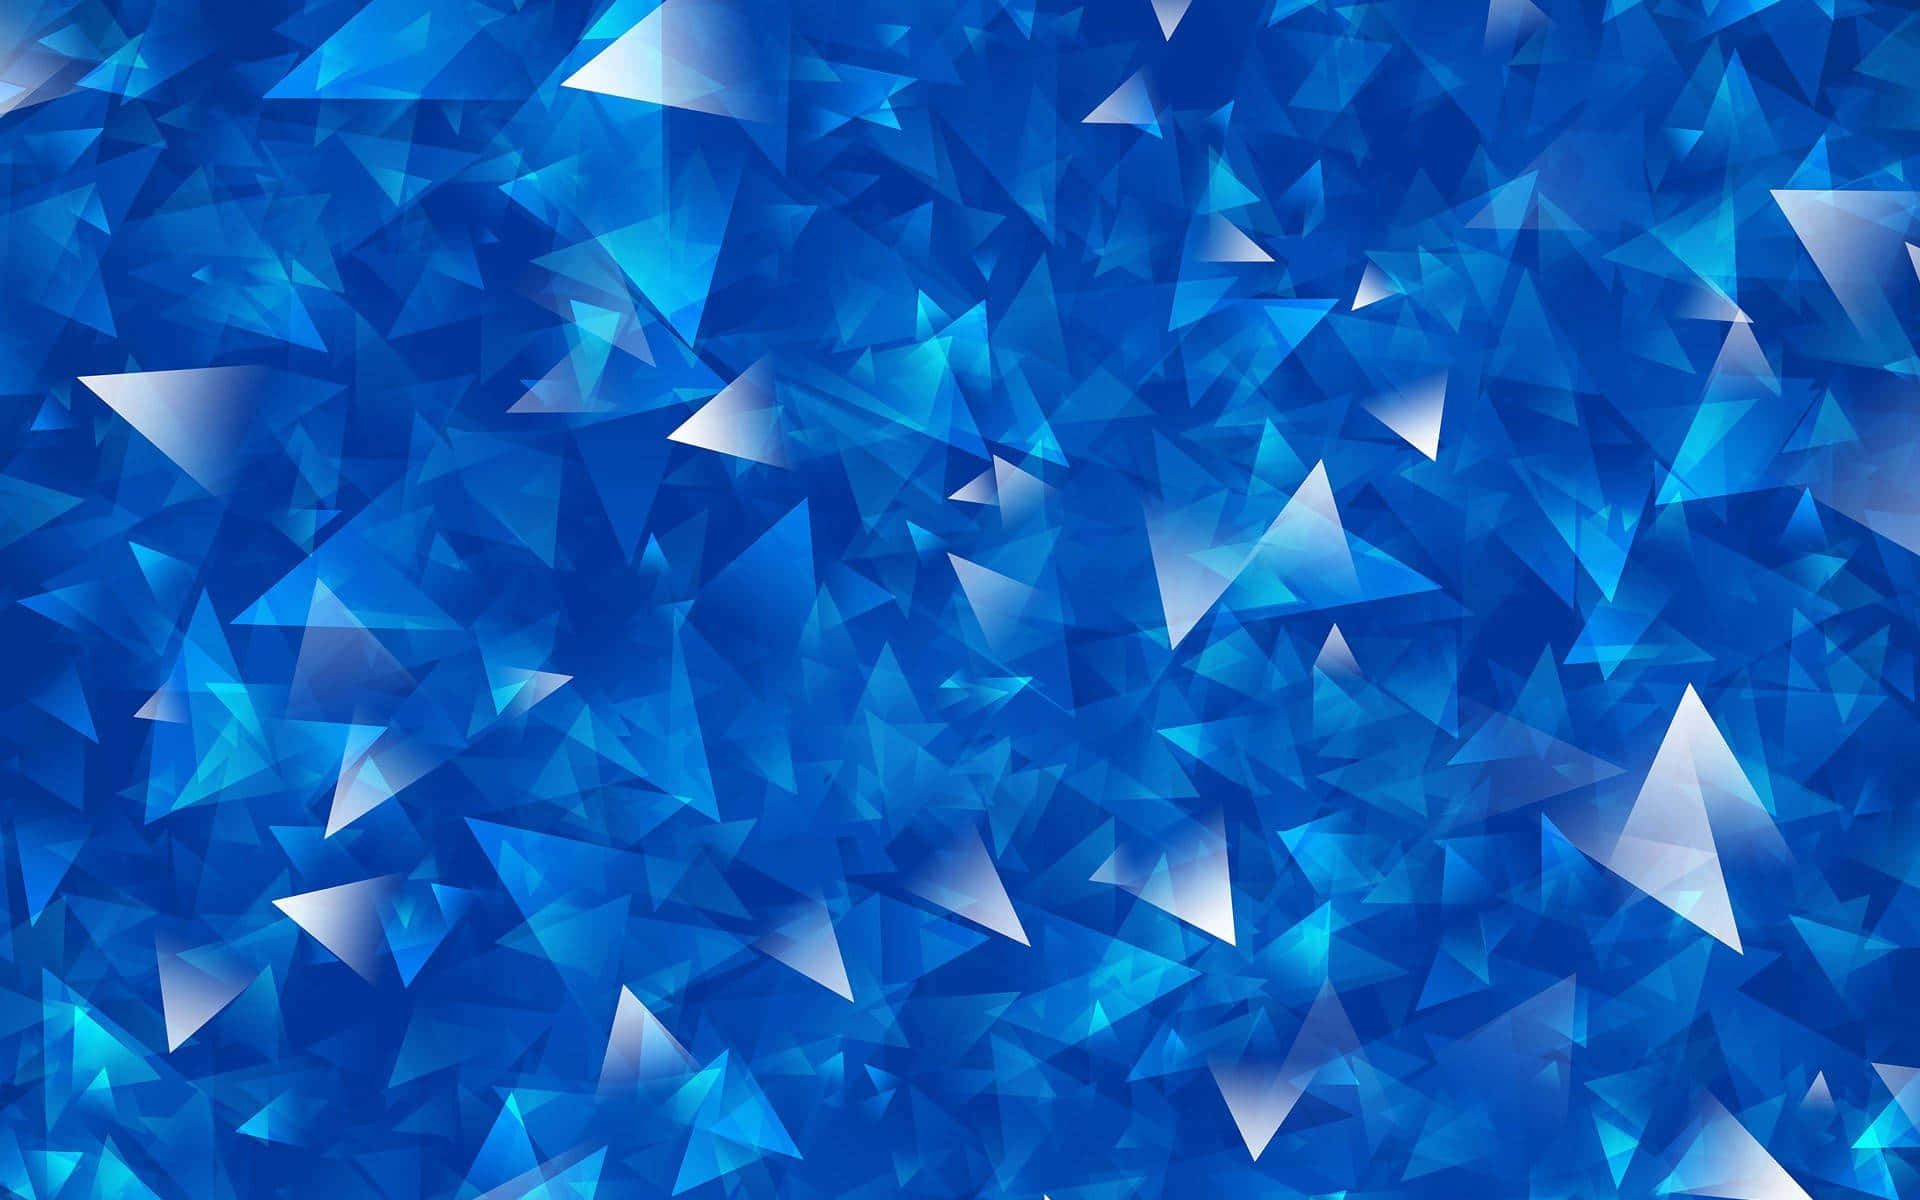 Diseñode Triángulos Geométricos En Tono Azul, Paisaje, Fotos Geniales Para Fondo De Pantalla.